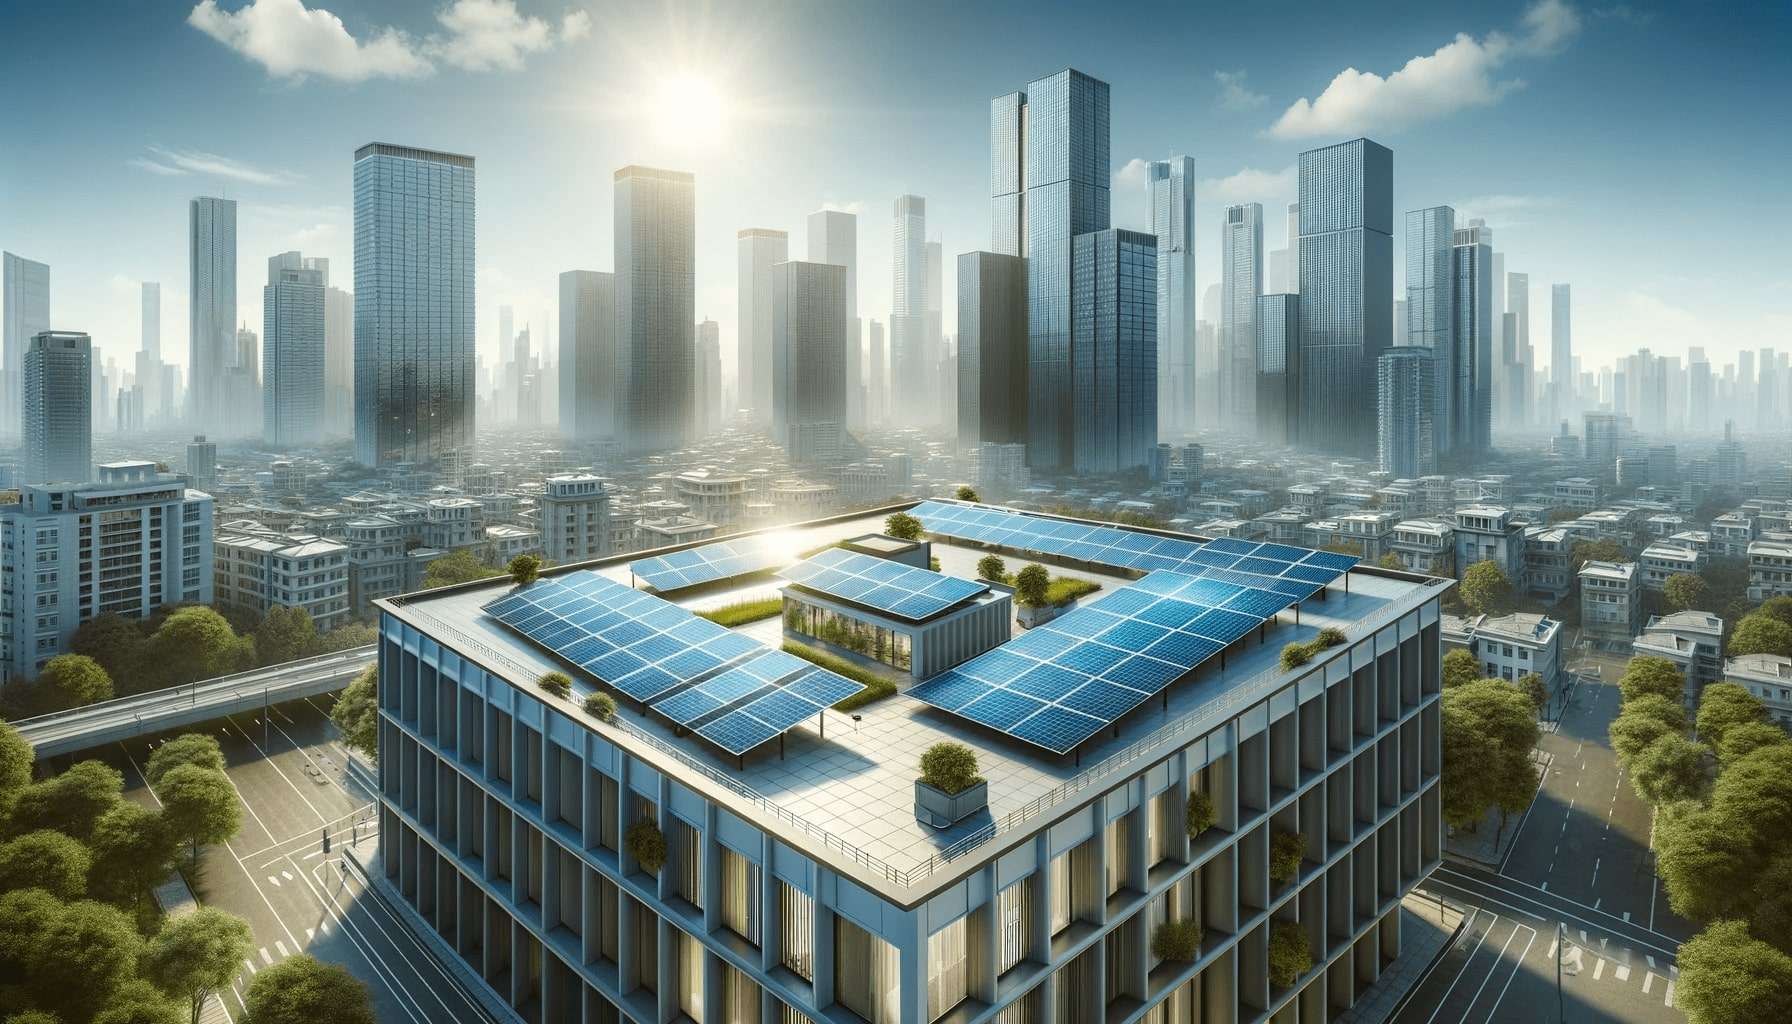 tetto moderno coperto di pannelli solari in un ambiente urbano